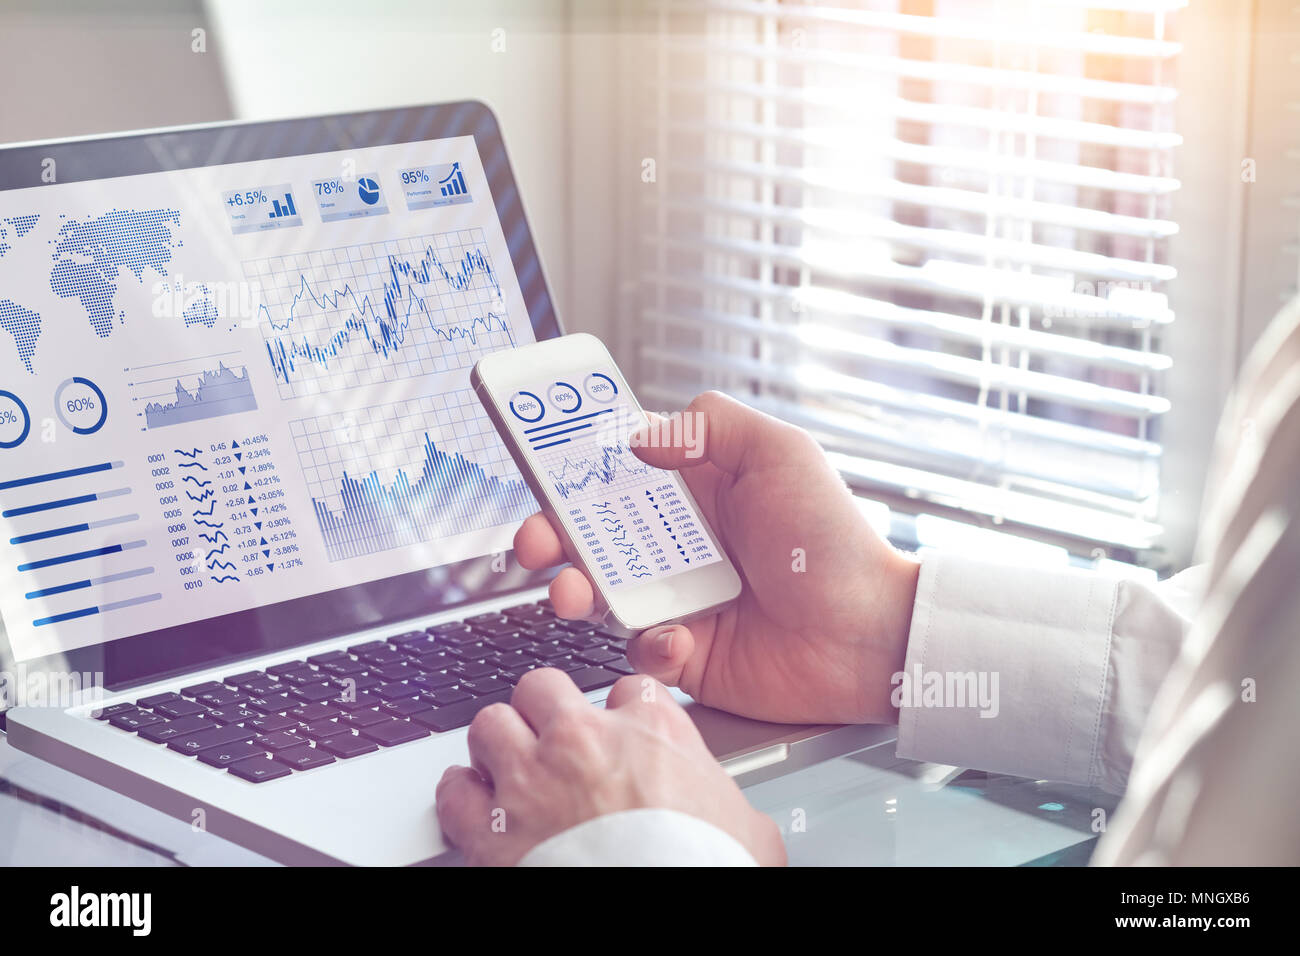 Business Analytics, tecnología del tablero de a bordo en el equipo y la pantalla del smartphone con un indicador clave de rendimiento (KPI) sobre operaciones financieras estadísticas Foto de stock